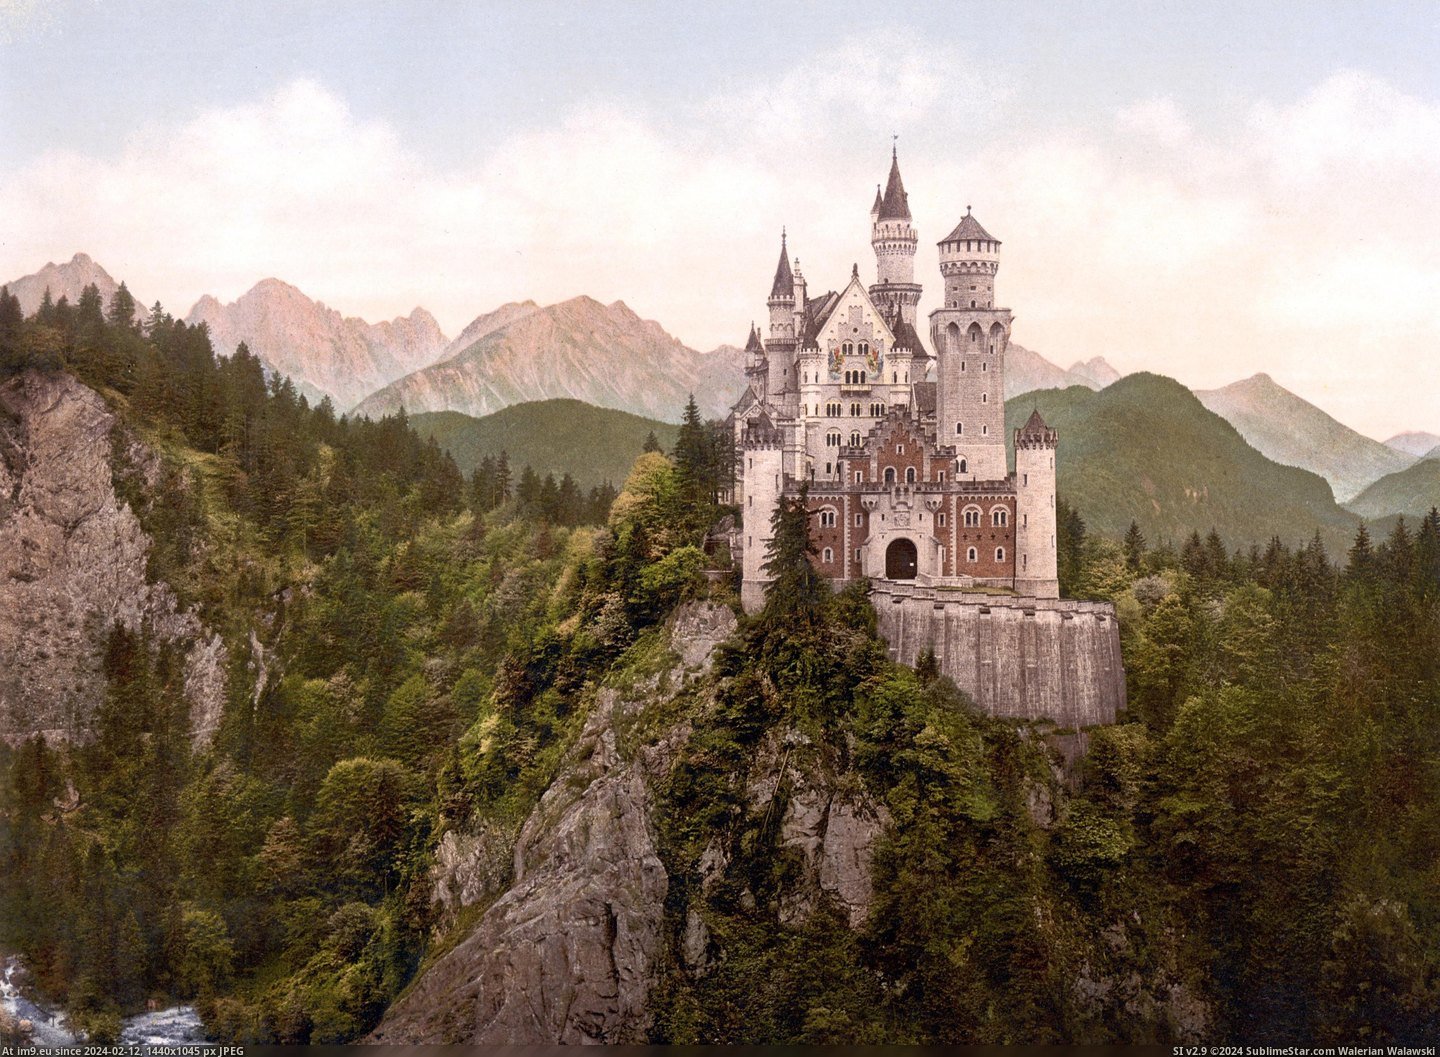 #Castle #Neuschwanstein #Loc #Print #Rotated Neuschwanstein Castle Loc Print Rotated Pic. (Bild von album Schloss Neuschwanstein (Neuschwanstein Castle)))